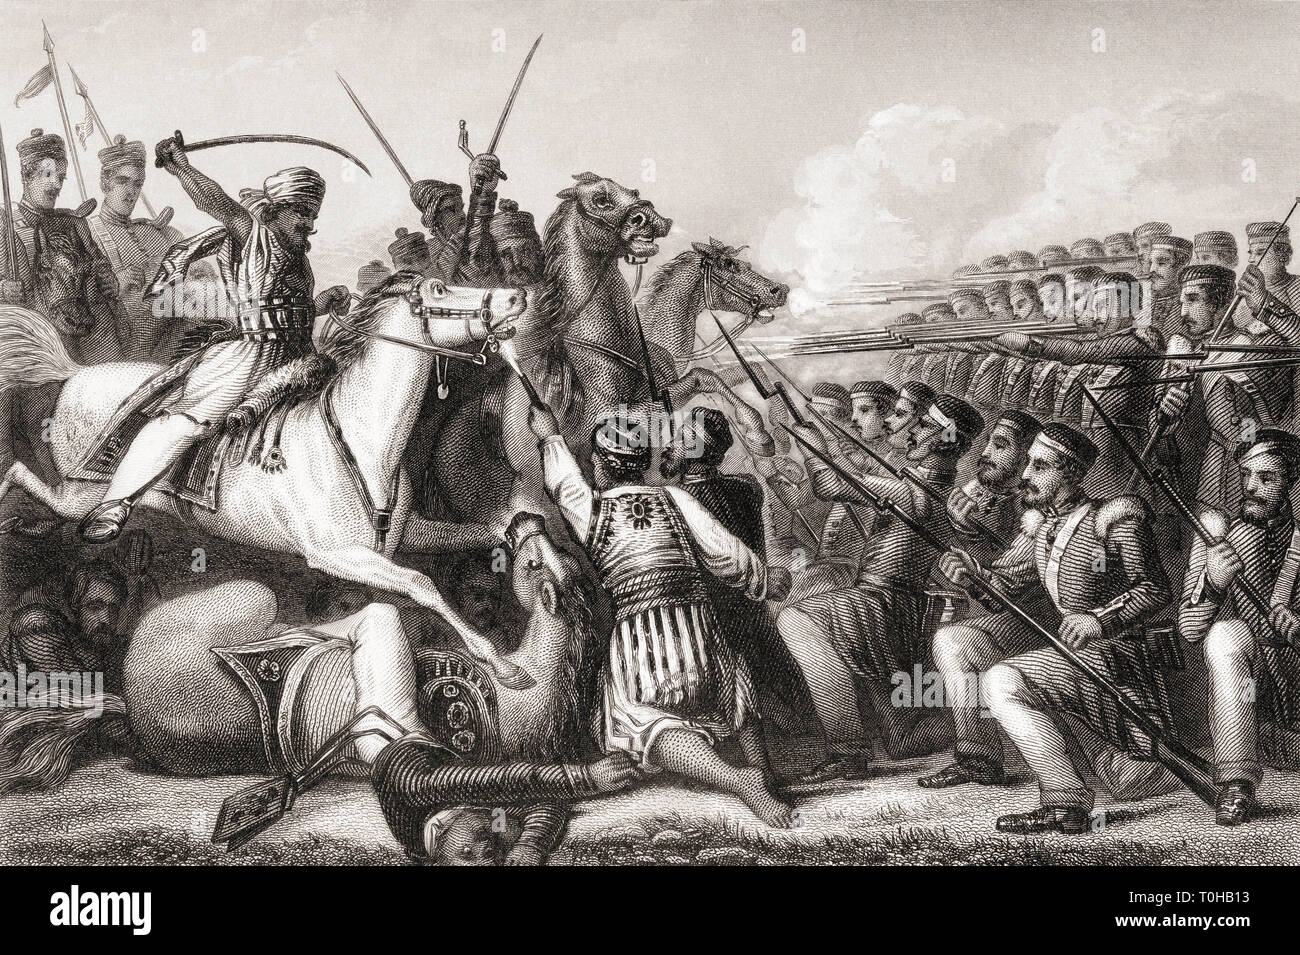 Cavalleria mutineer che attacca una piazza di fanteria, Battaglia di Cawnpore, India, Asia, 1857, Vecchio dipinto d'epoca del 1800, mutinismo indiano, Sepoy mutiny, ribellione indiana Foto Stock